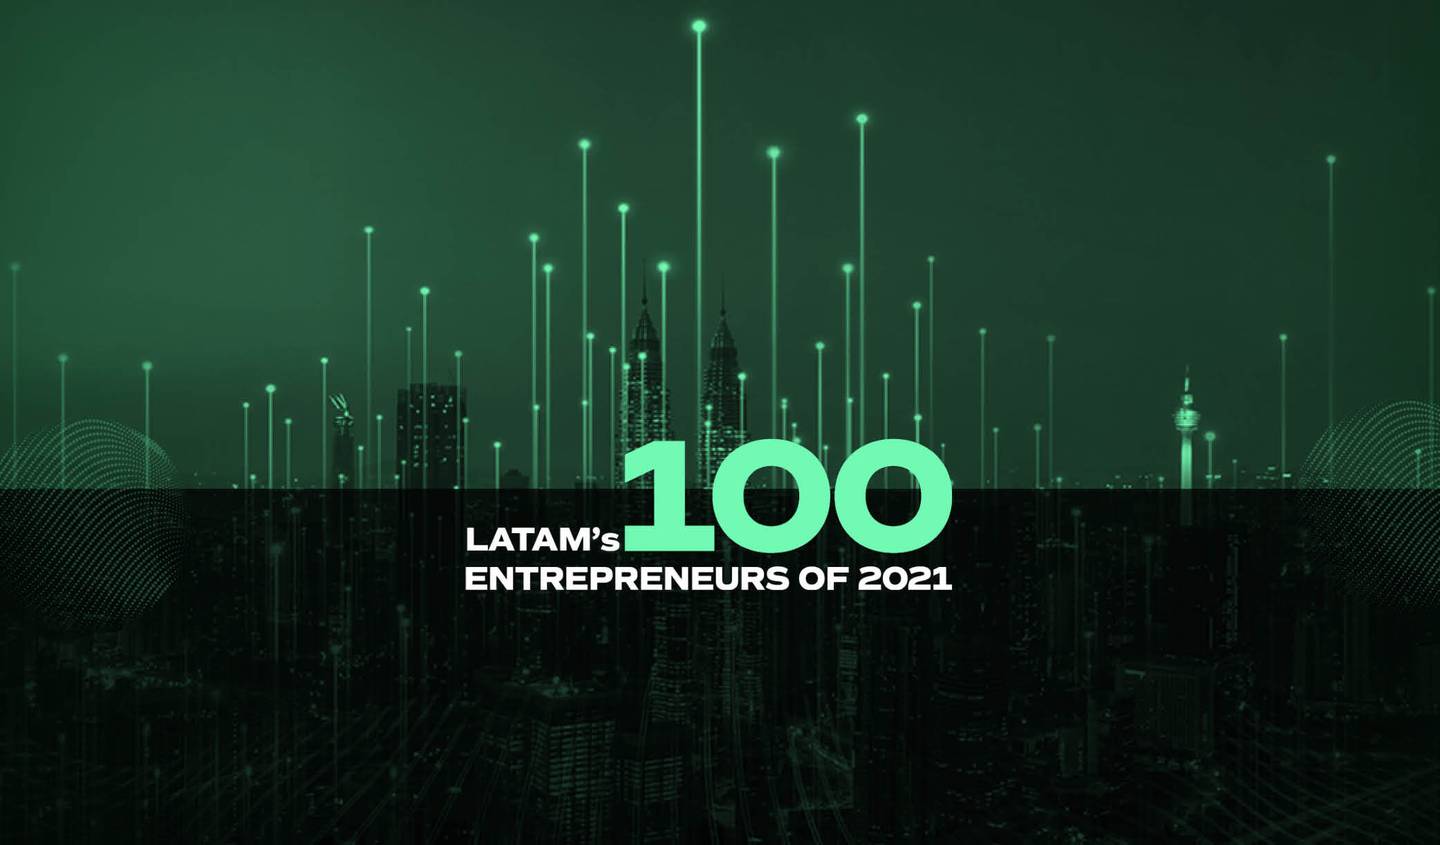 Latam's 100 Entrepreneurs